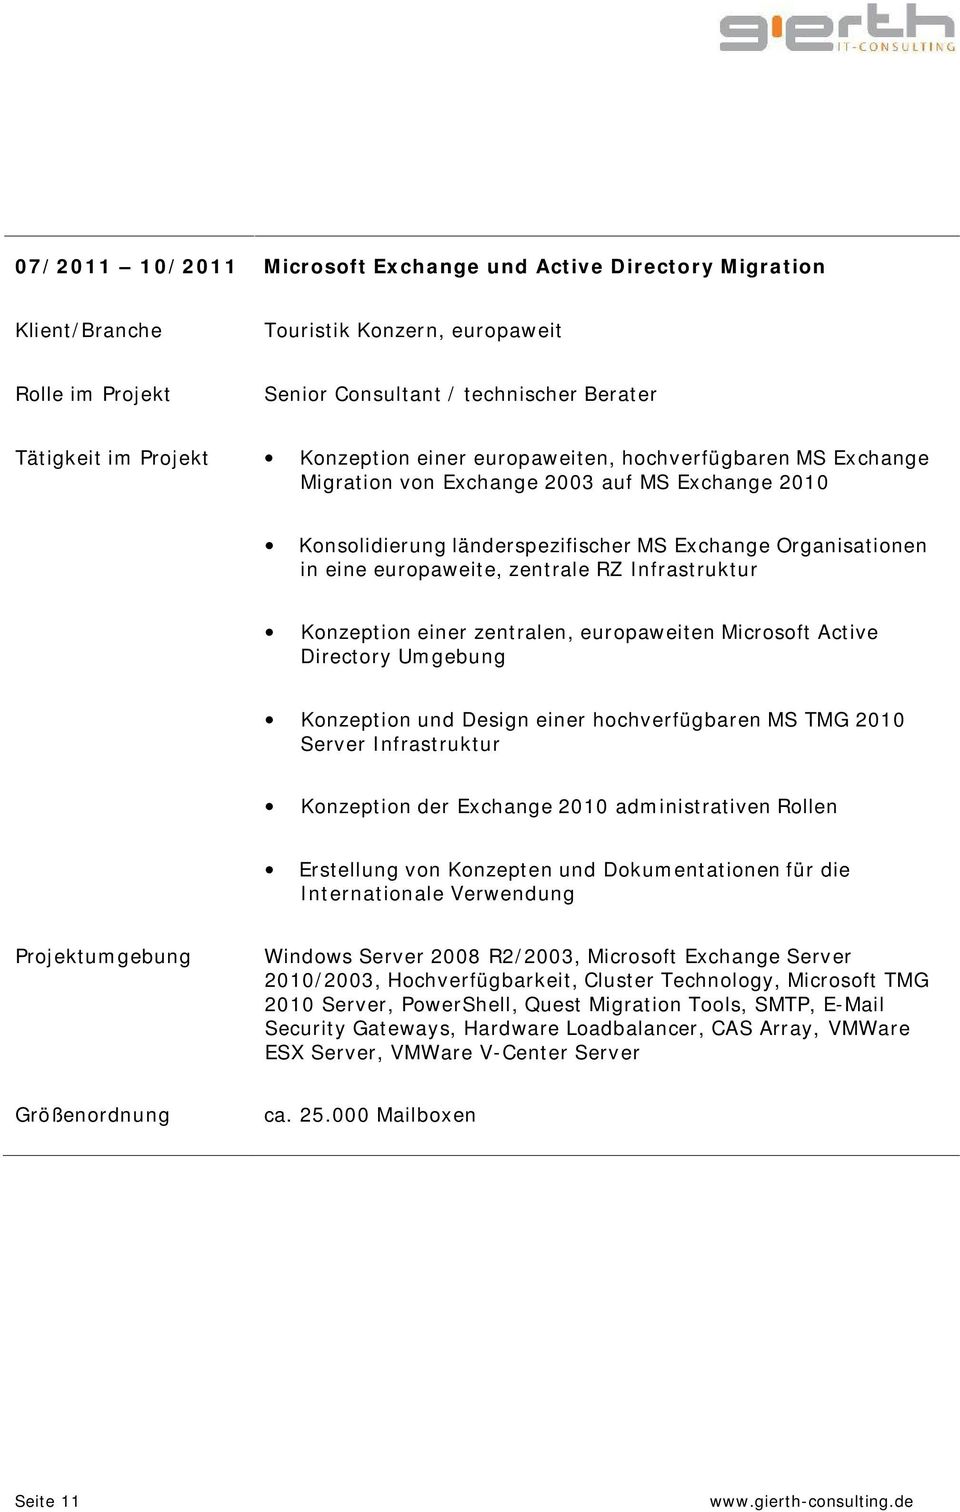 einer zentralen, europaweiten Microsoft Active Directory Umgebung Konzeption und Design einer hochverfügbaren MS TMG 2010 Server Infrastruktur Konzeption der Exchange 2010 administrativen Rollen